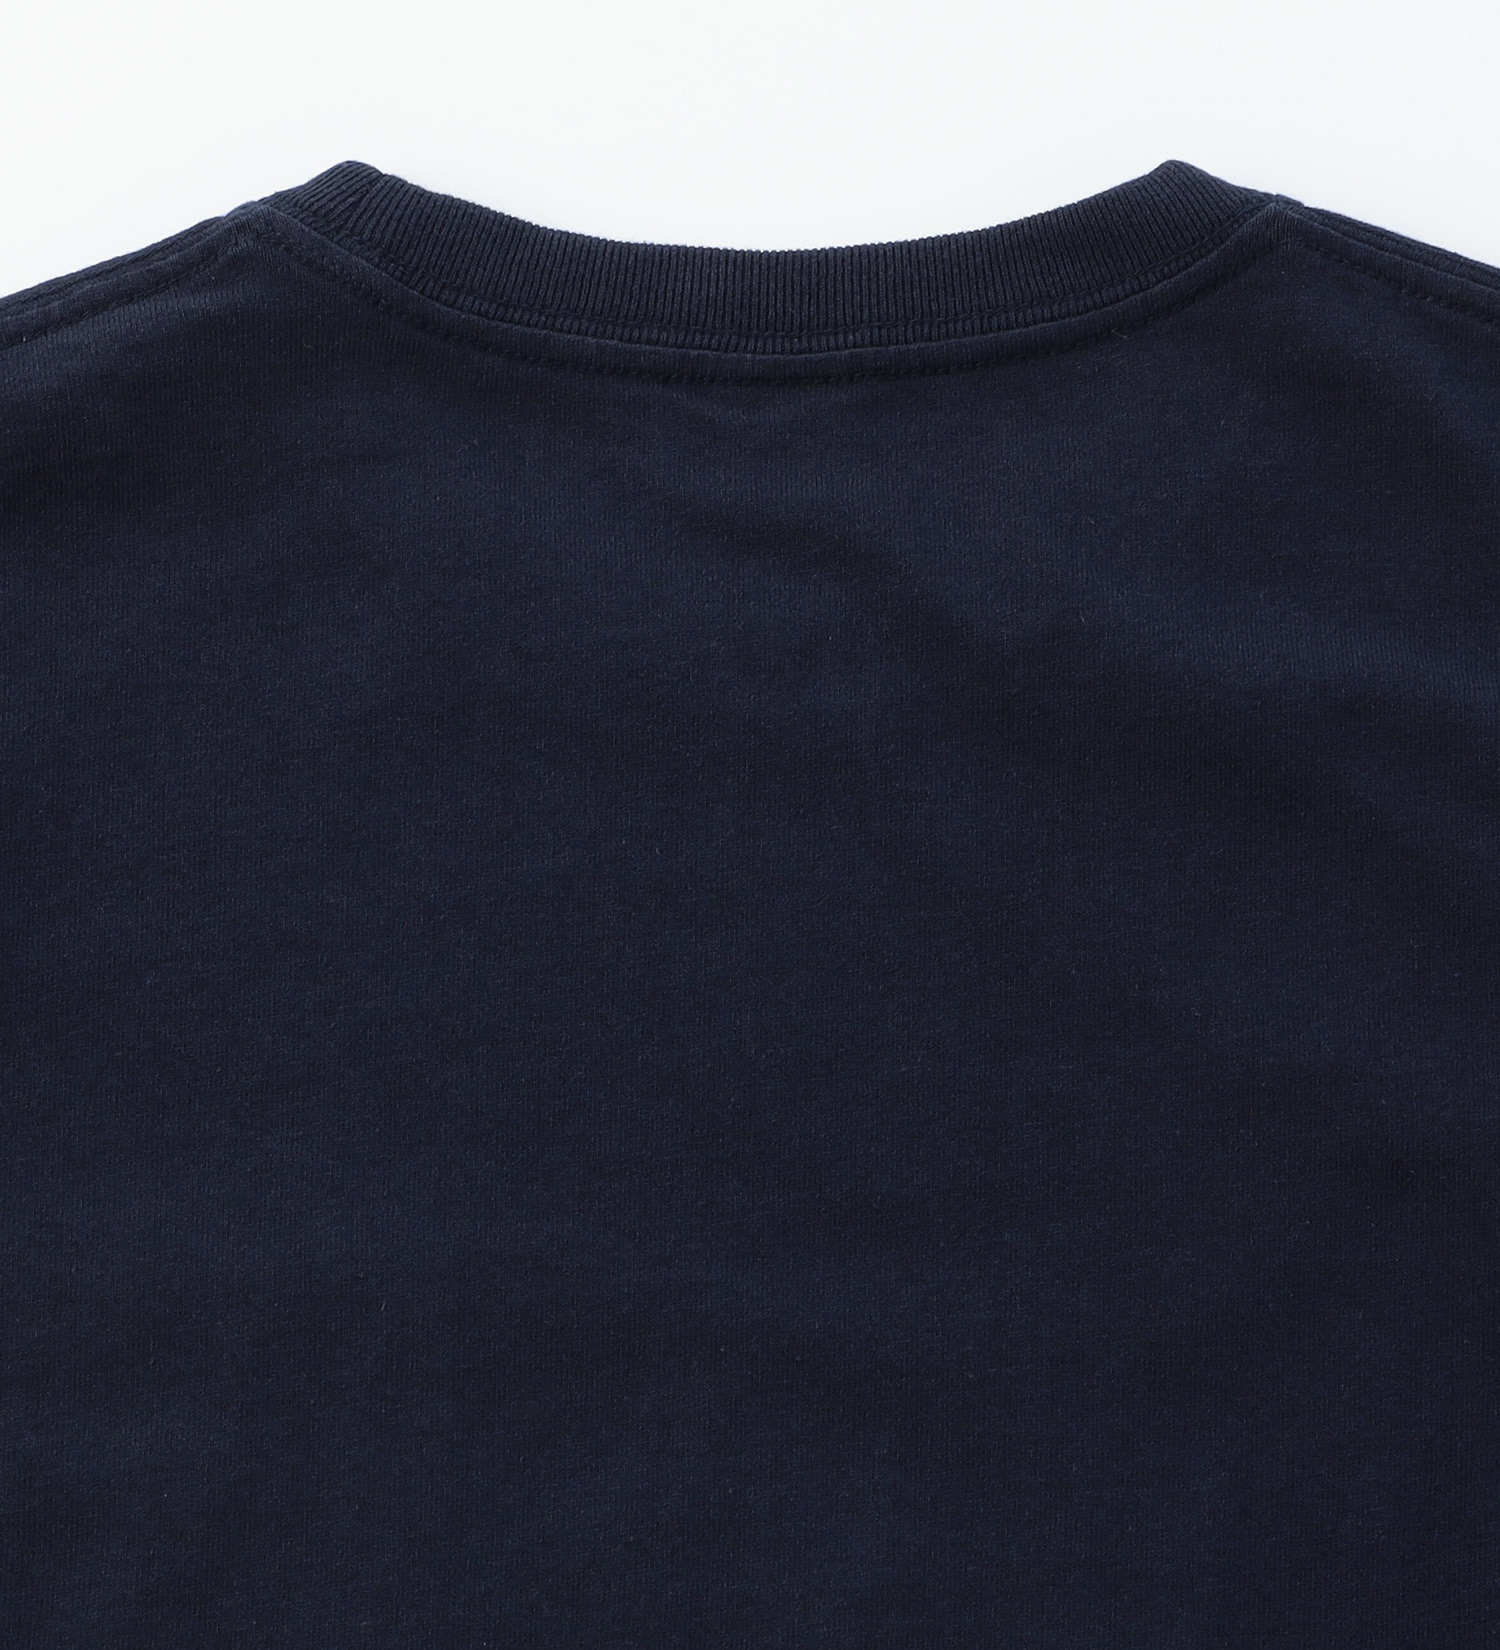 EDWIN(エドウイン)の【BLACKFRIDAY】ポケットロゴTシャツ 半袖【アウトレット店舗・WEB限定】|トップス/Tシャツ/カットソー/メンズ|ネイビー